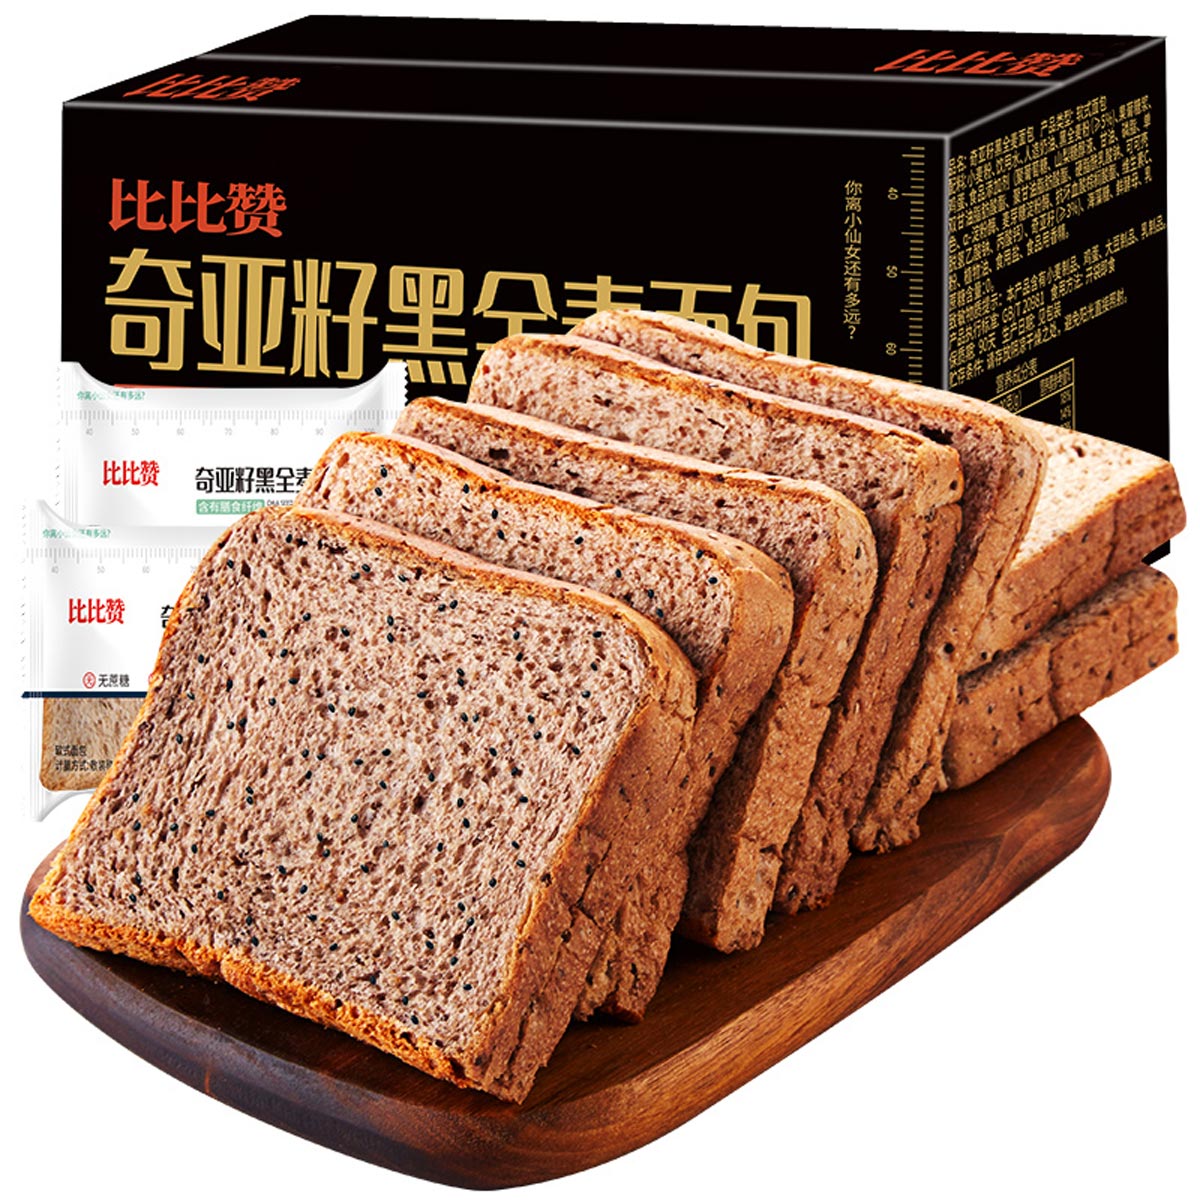 bi bi zan 比比赞 奇亚籽黑全麦面包 1kg 15.9元